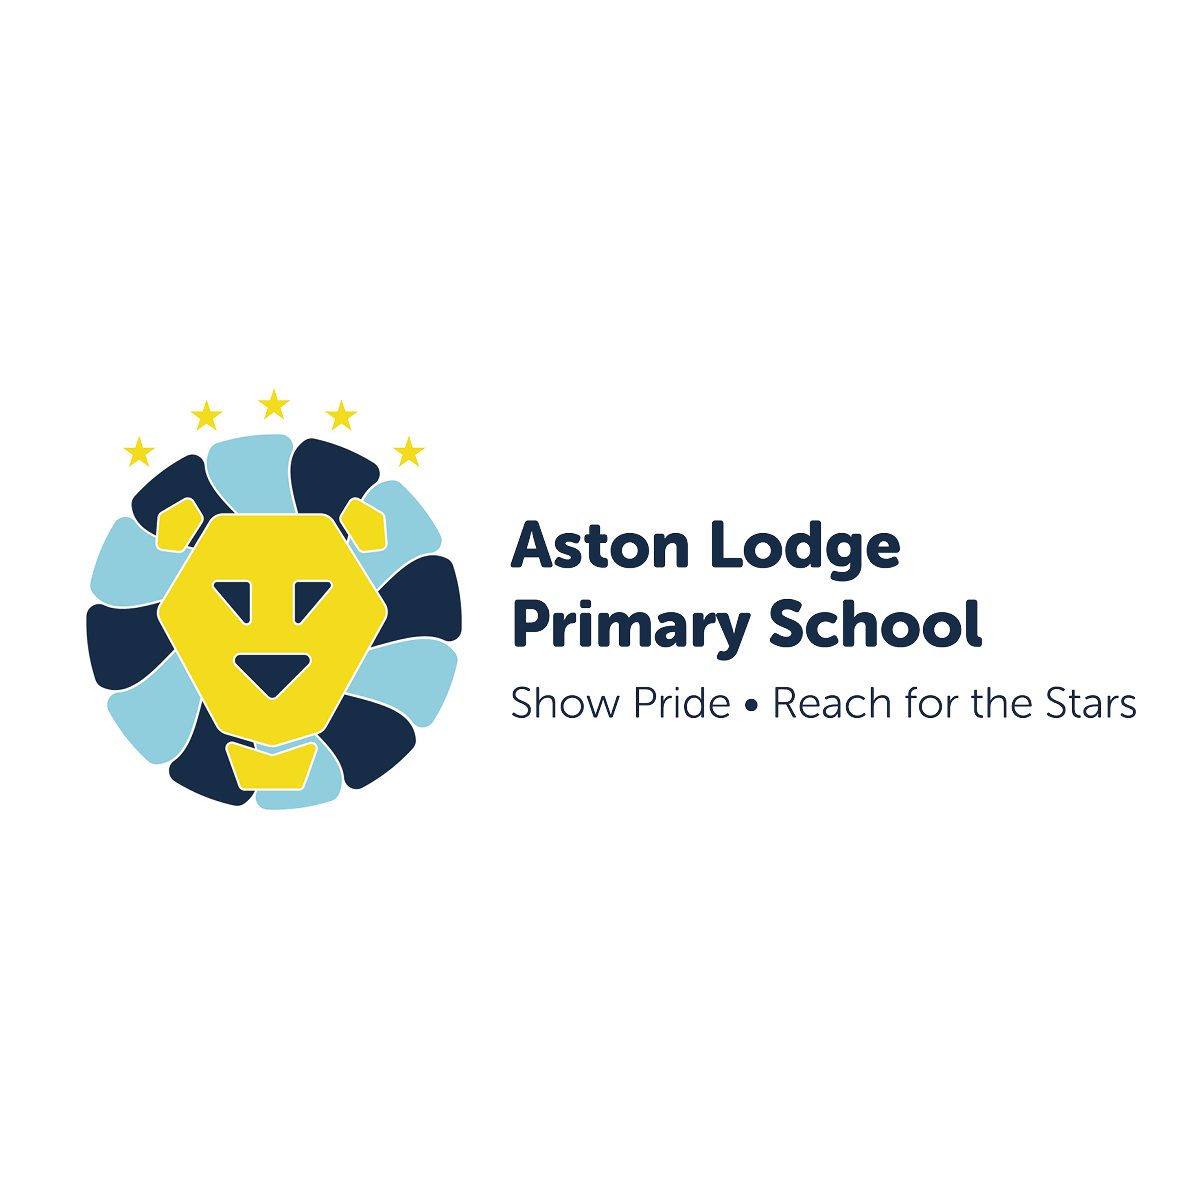 Aston Lodge Primary